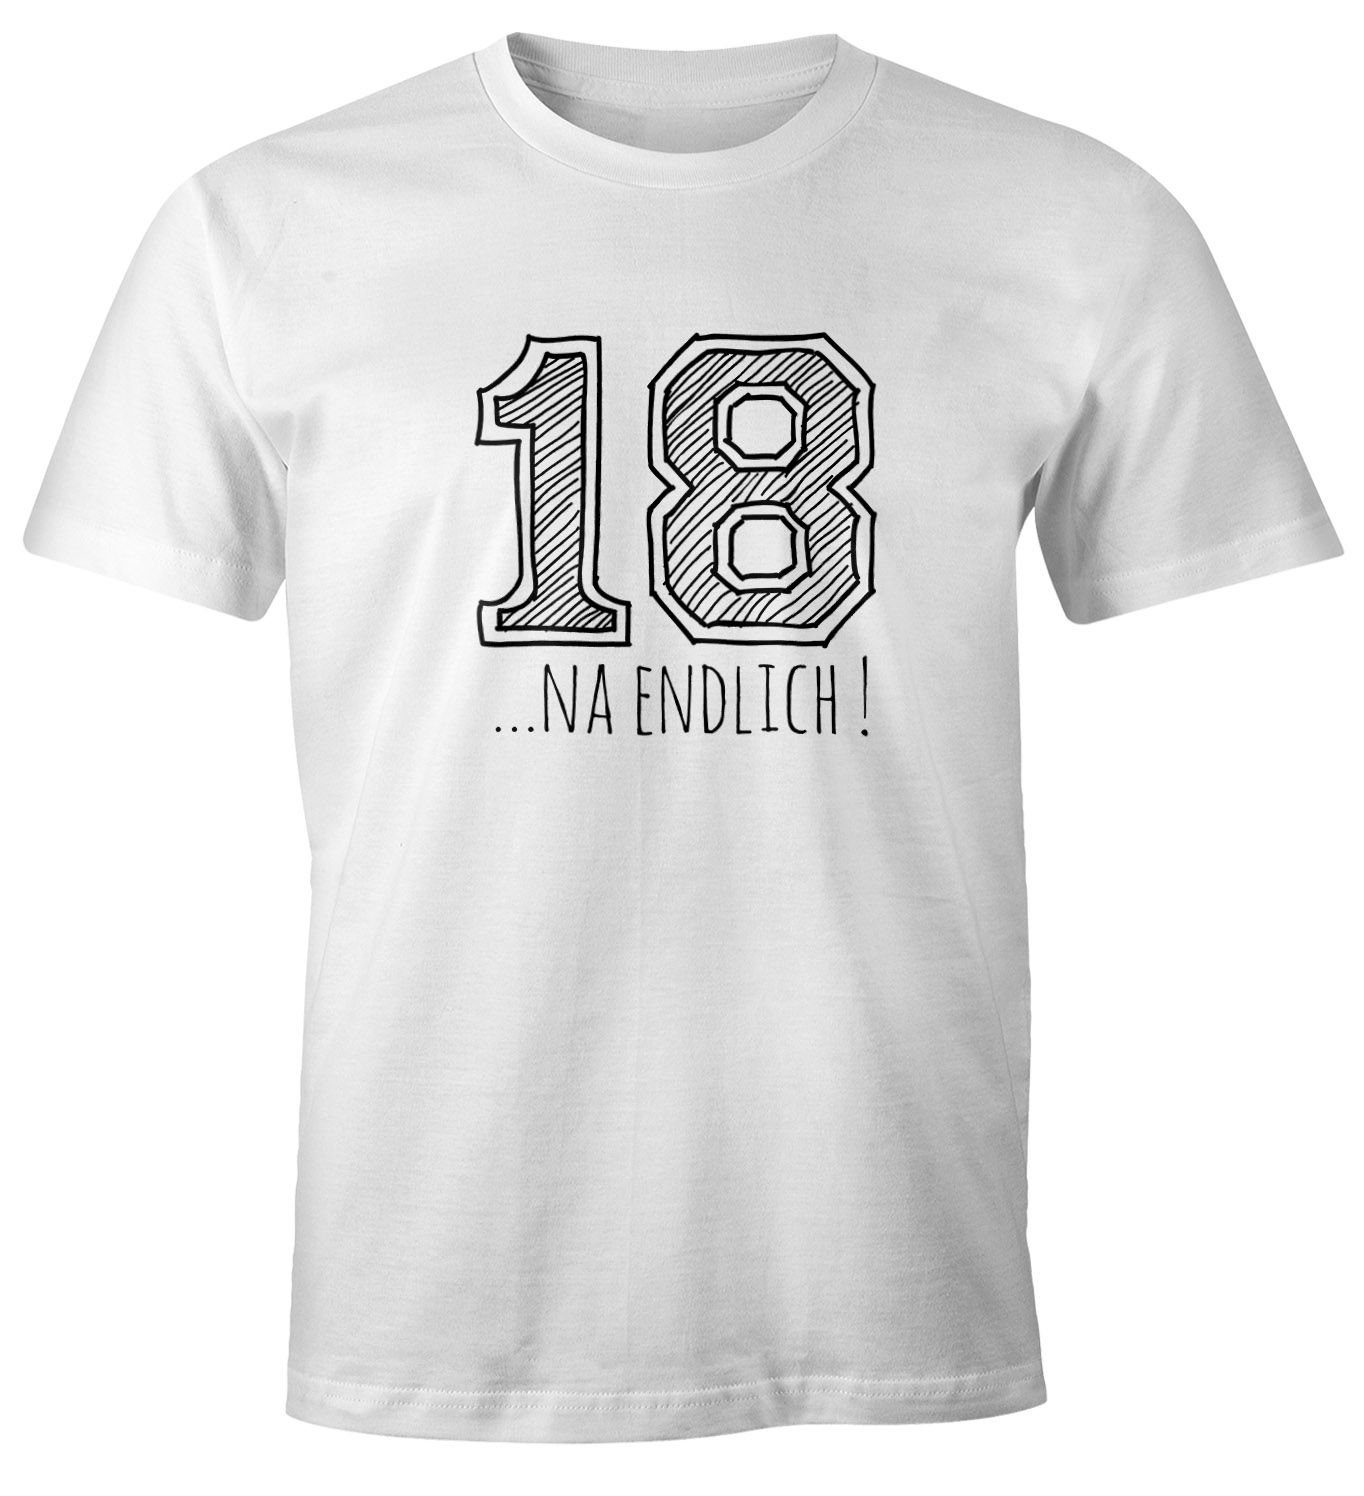 Geburtstag T-Shirt Geschenk MoonWorks Moonworks® Herren Fun-Shirt College Print Print-Shirt 18... mit endlich Sketch weiß na